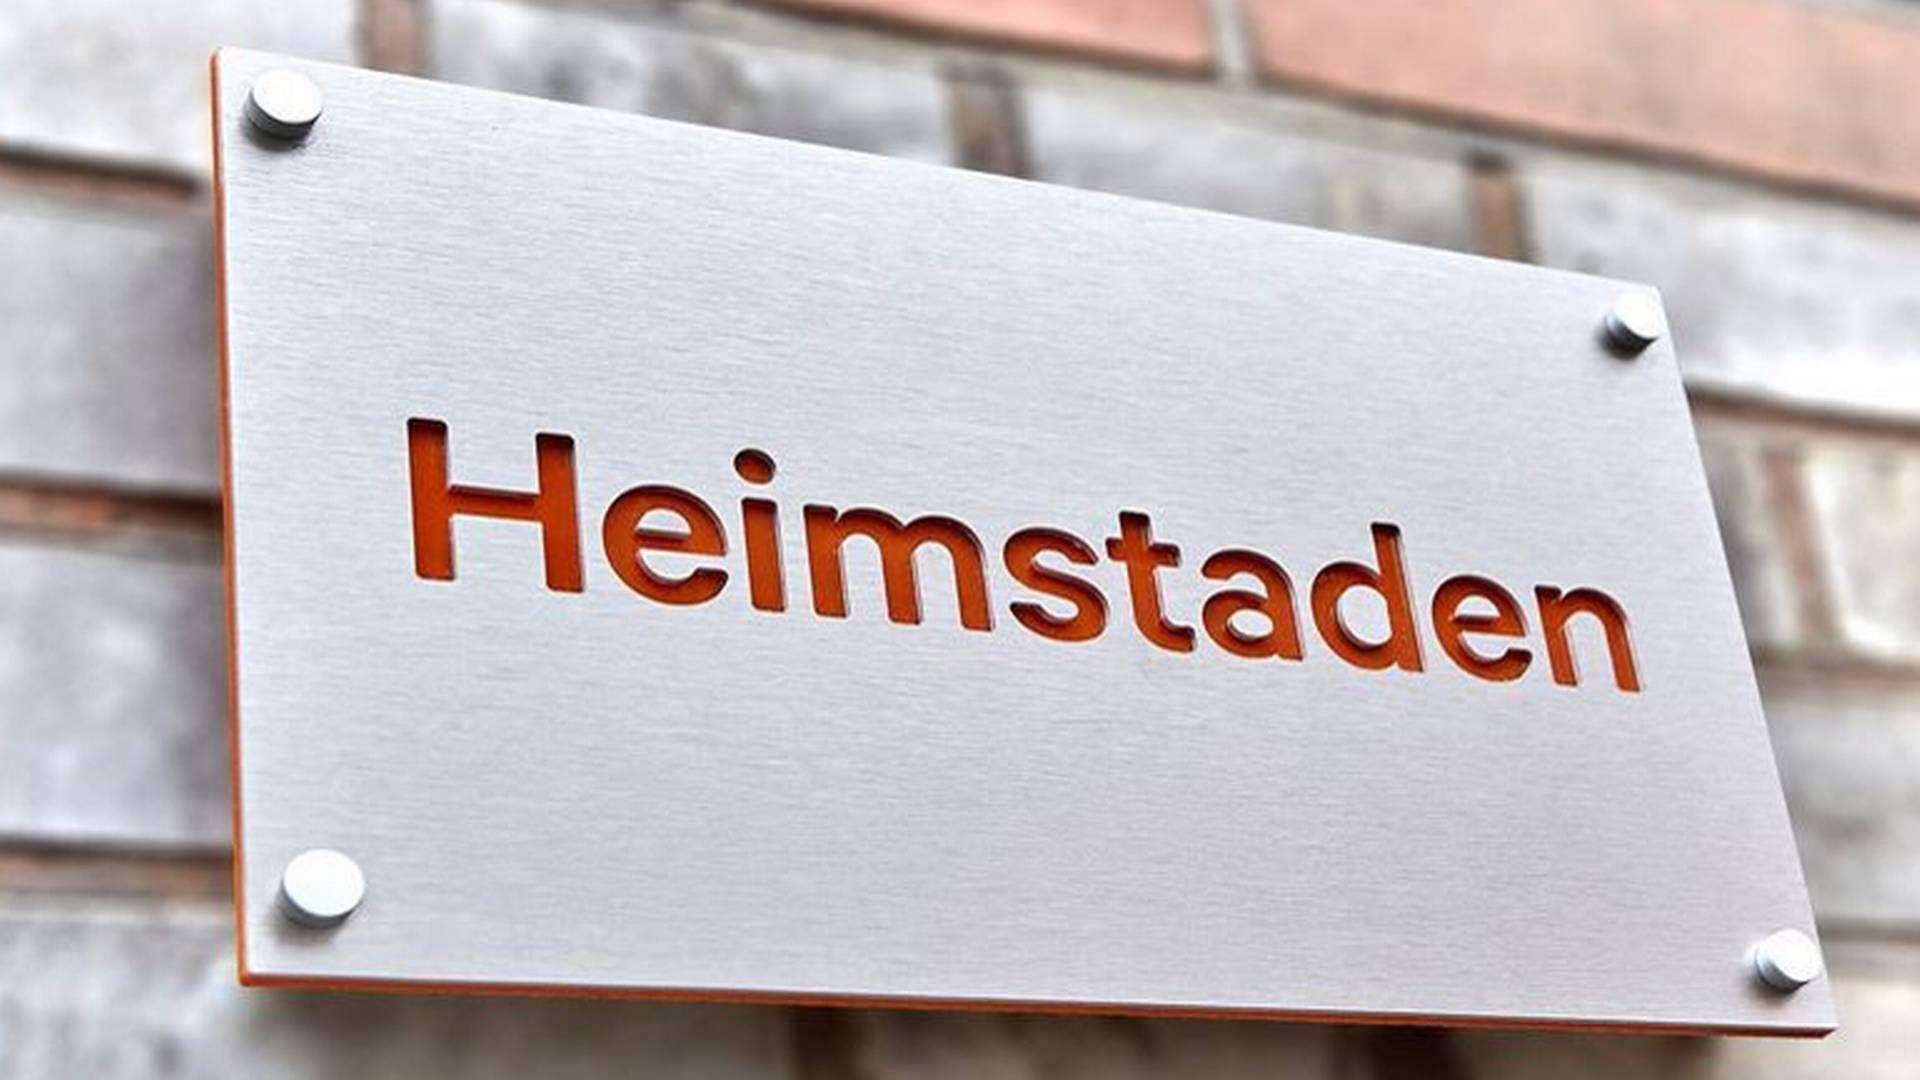 Hos Heimstaden, som den norske velhaver Ivar Tollefsen kontrollerer, er der intet som tyder på, at personer er involveret i sag om bestikkelse, sagde bestyrelsesformand Helge Leiro Baastad i sidste måned. | Foto: PR / Heimstaden